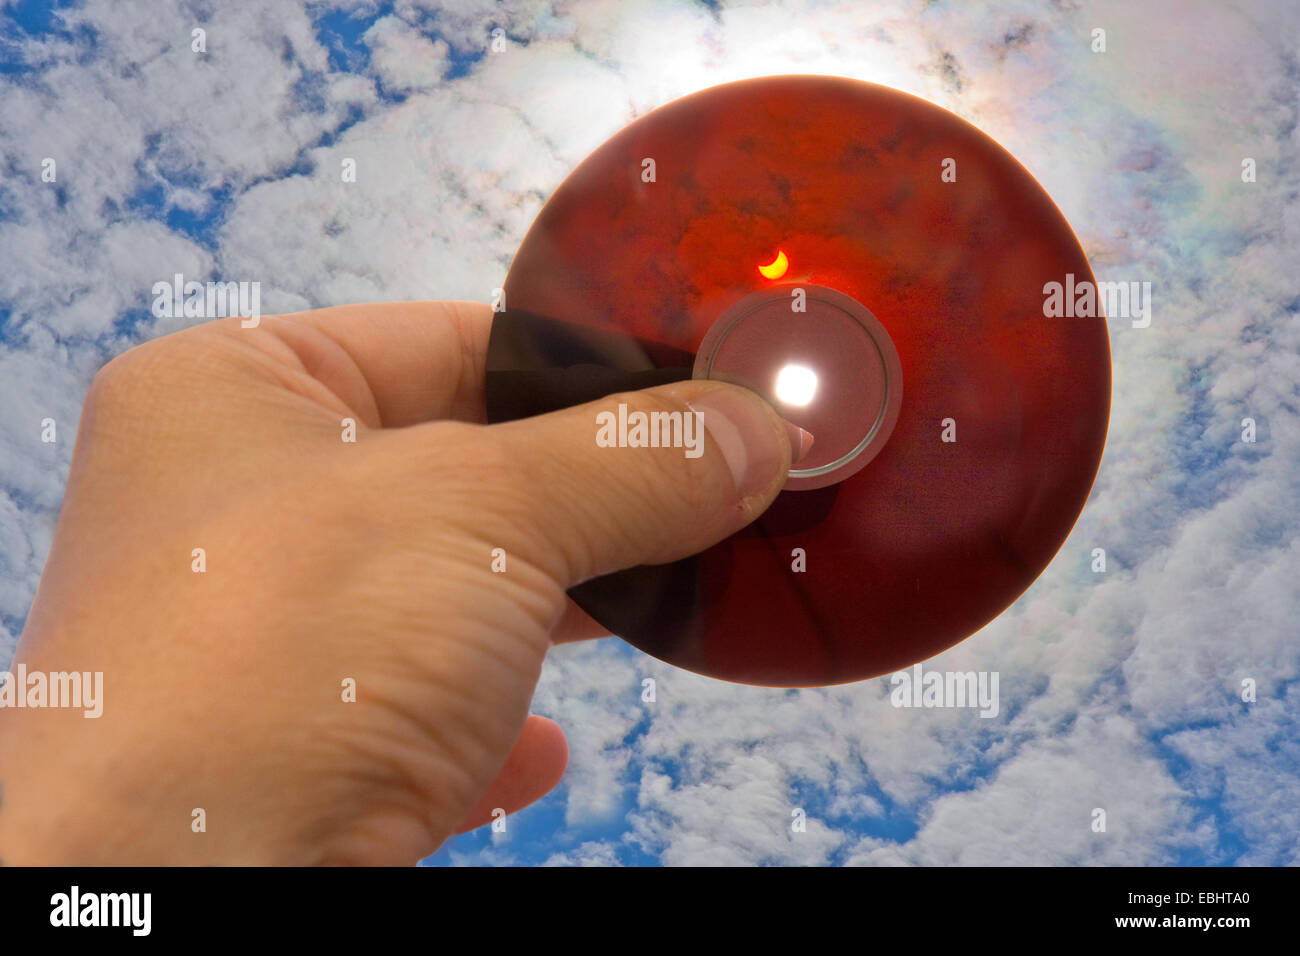 Una mano che tiene la parte interna di un disco floppy verso il sole per proteggere gli occhi quando si guarda una parziale eclissi solare. Foto Stock